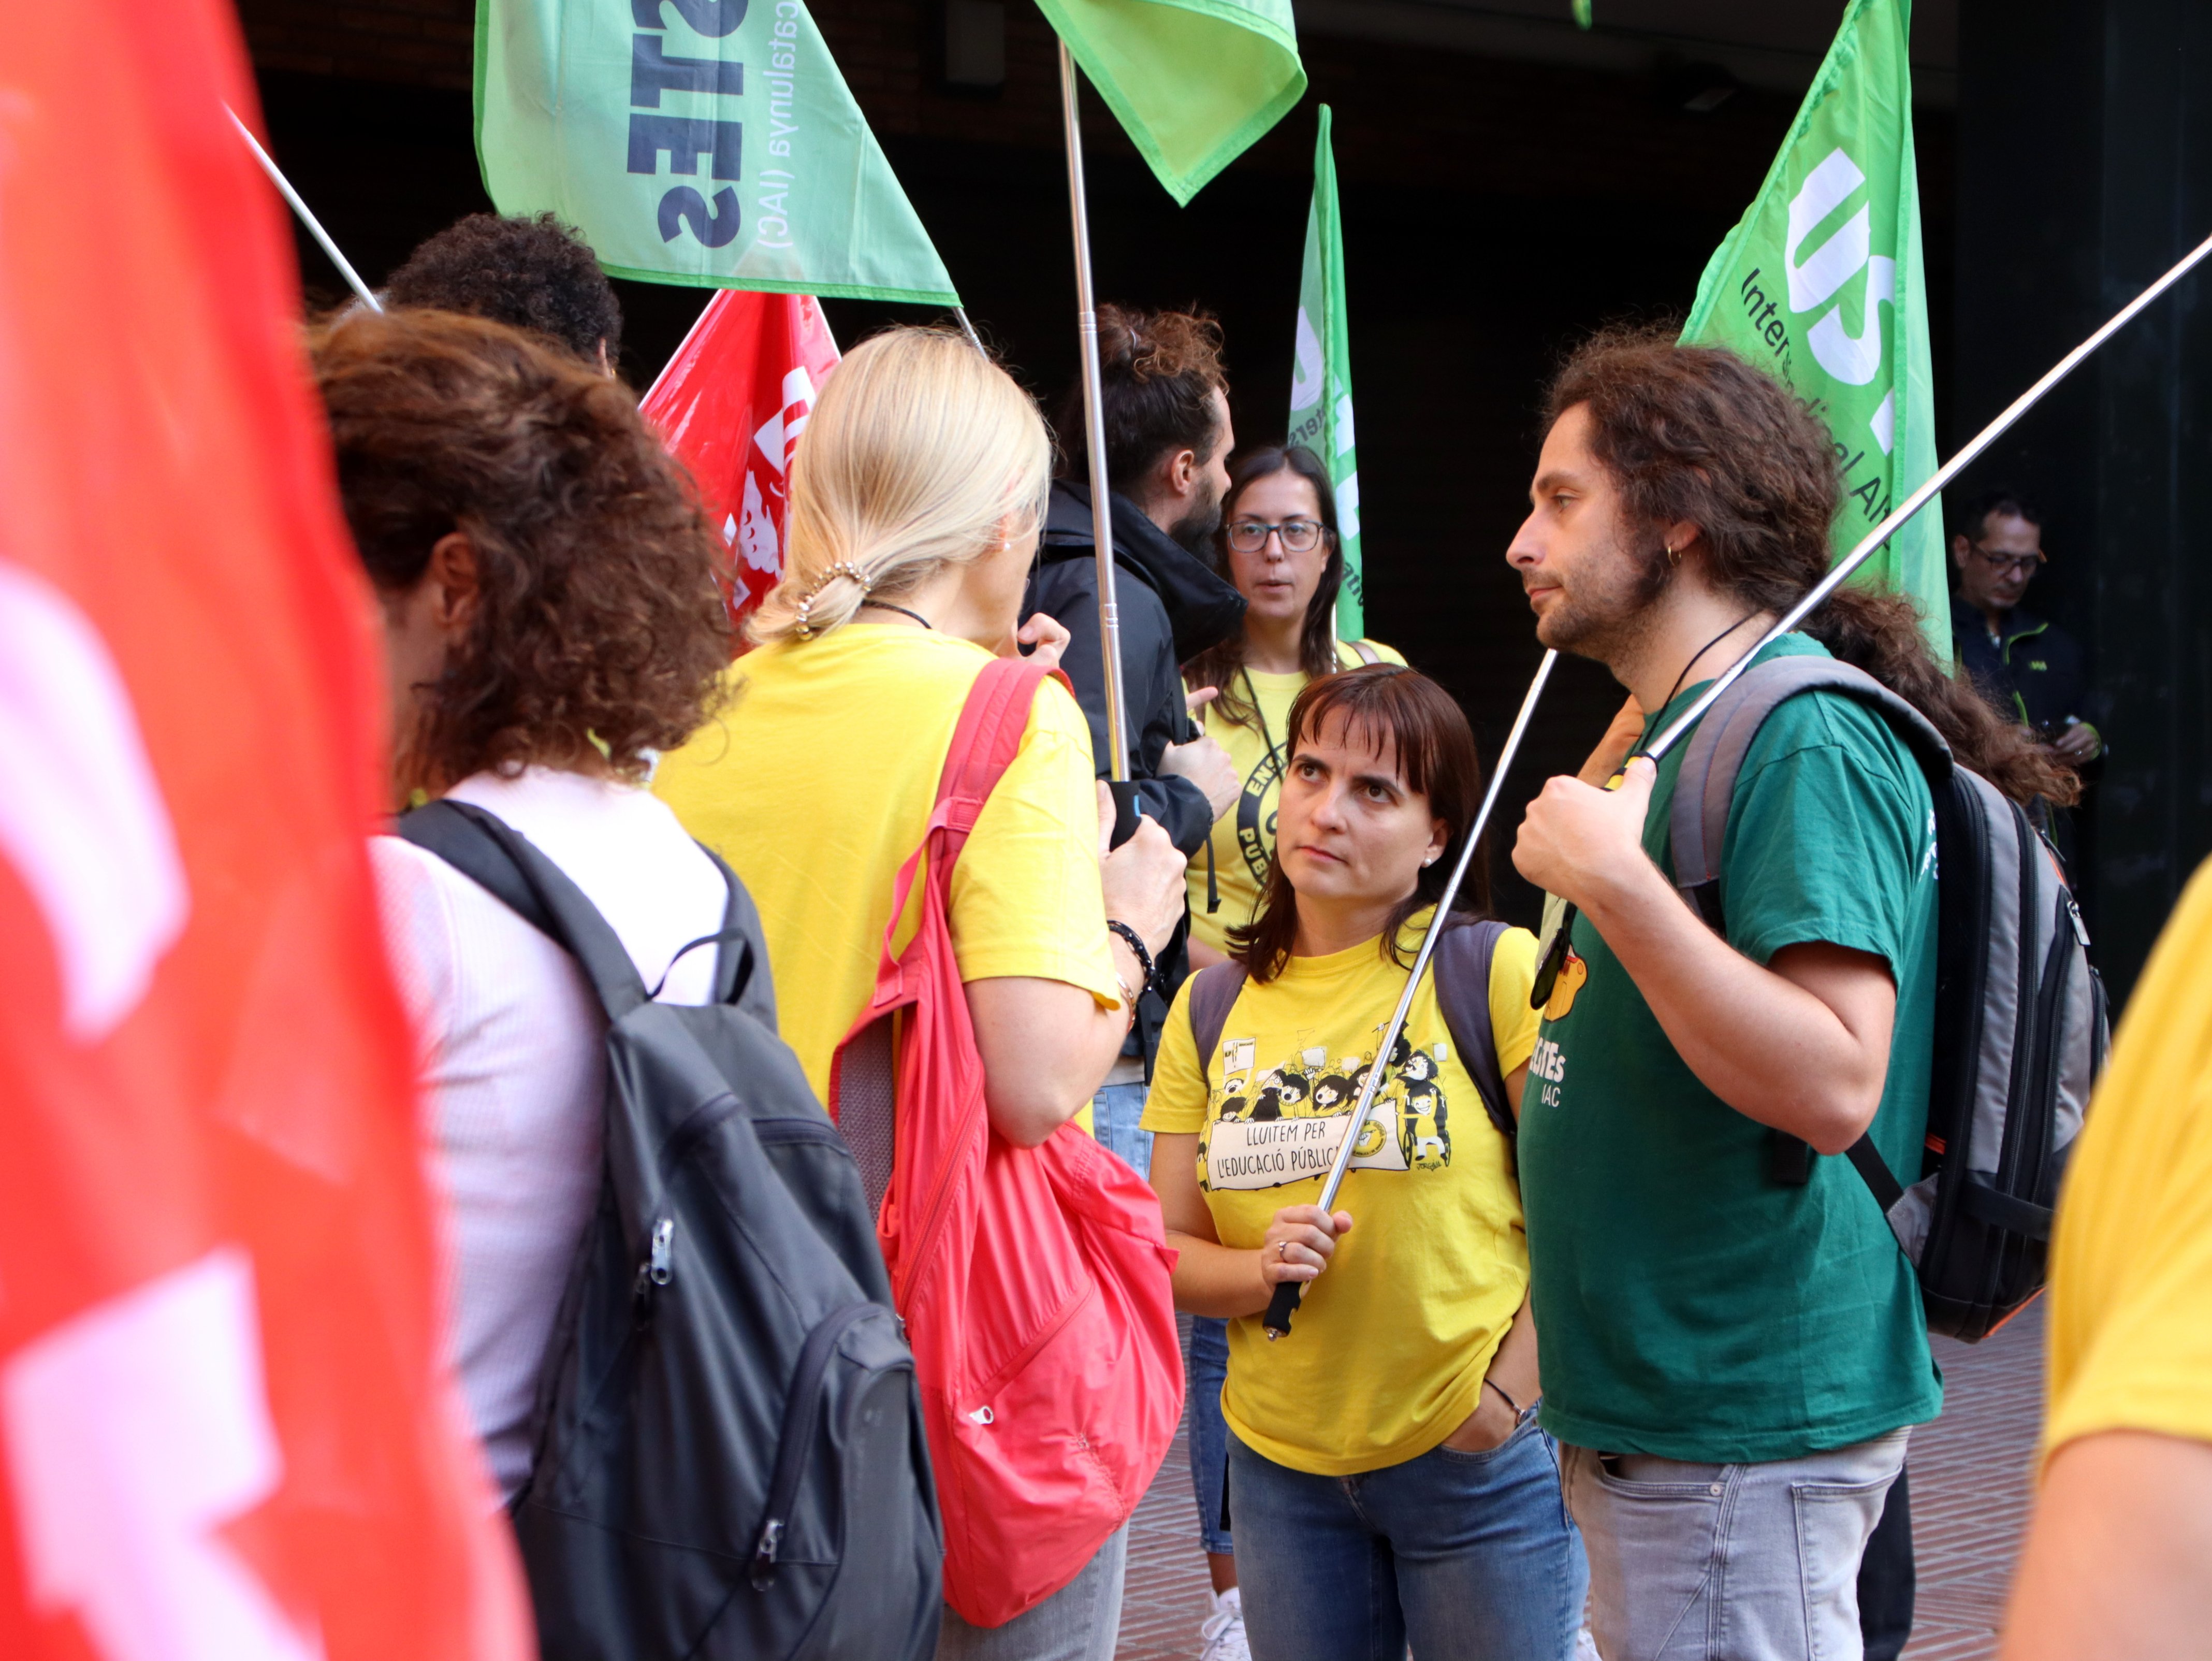 Els sindicats exigeixen a Educació més propostes i amenacen amb noves mobilitzacions